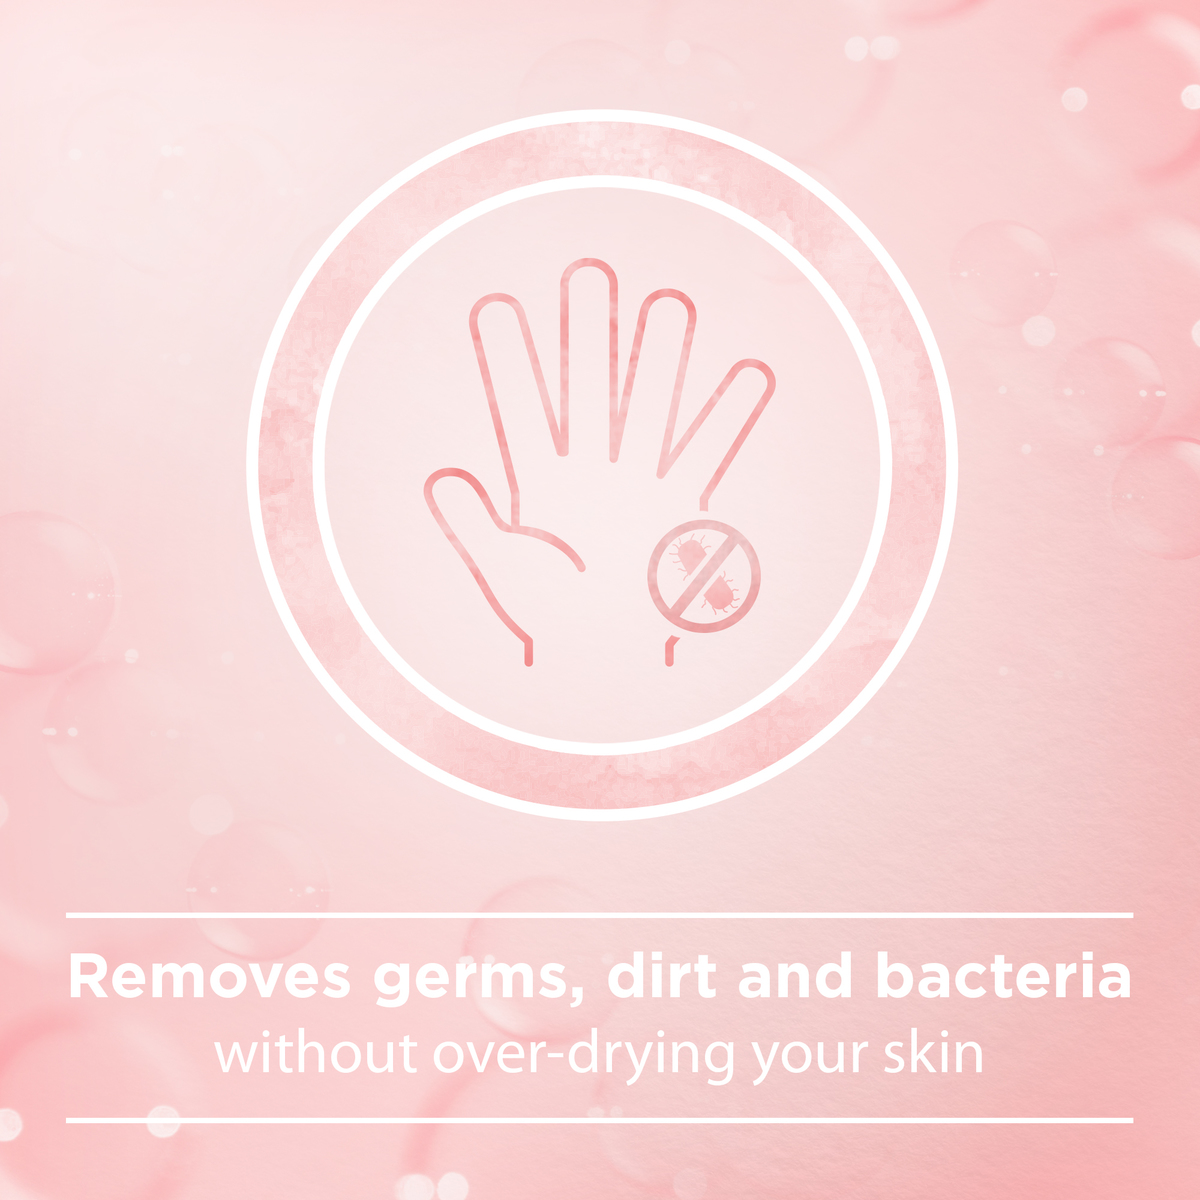 جونسن 3 في 1 سائل تنظيف اليدين مضاد للبكتيريا بزهر اللوز 500 مل